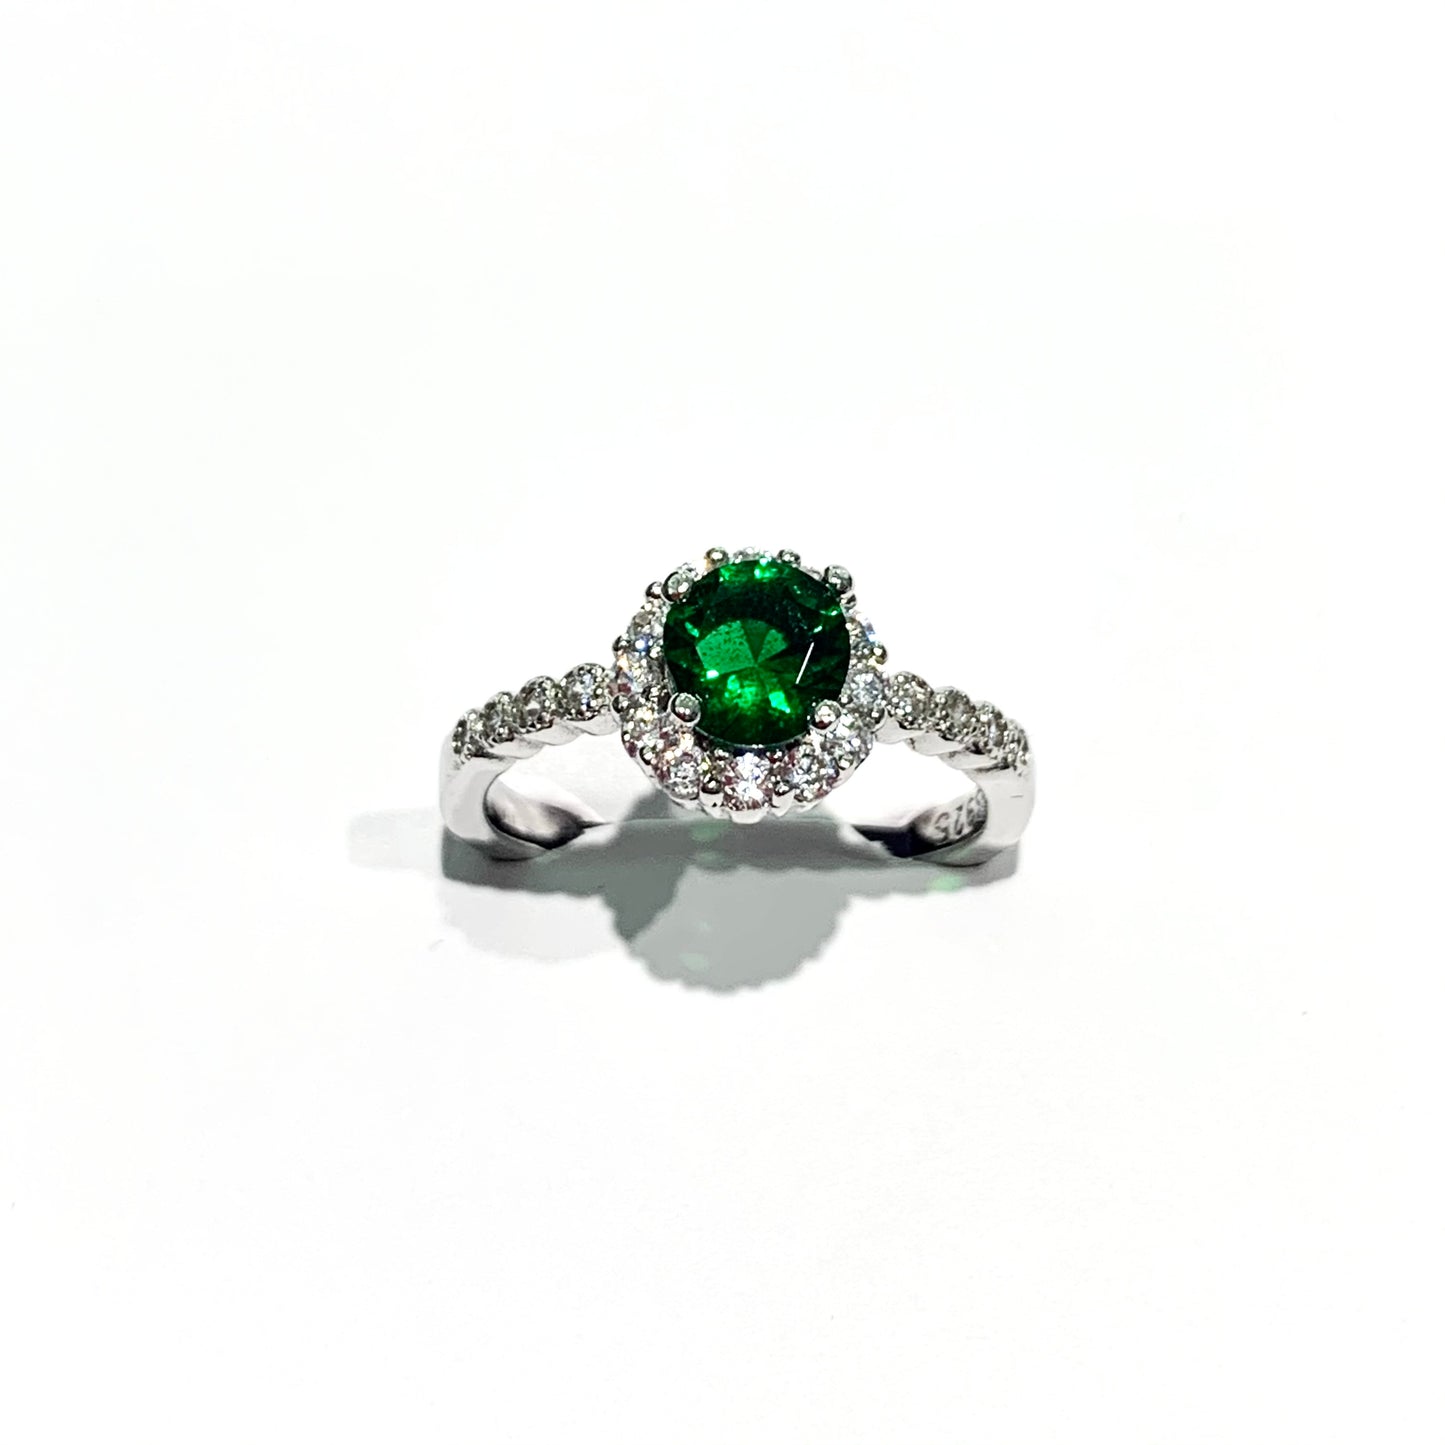 Anello in argento con zircone centrale colore smeraldo circondato da zirconi bianchi e zirconi laterali.  Dimensione 0,8 cm.  Misura 14.